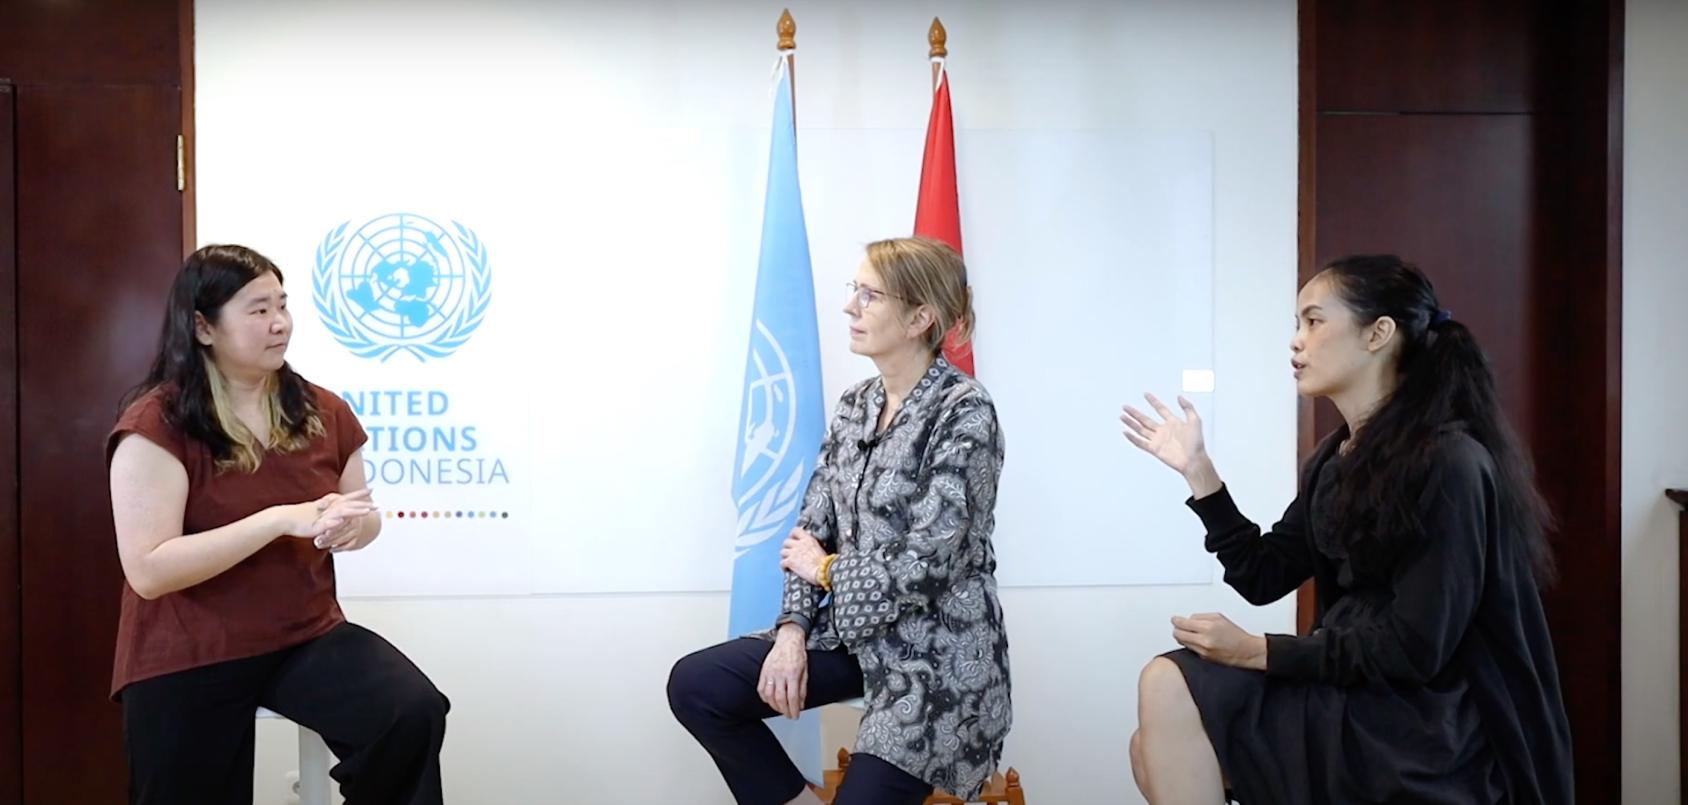 三名妇女在旗帜和联合国标志前进行讨论。